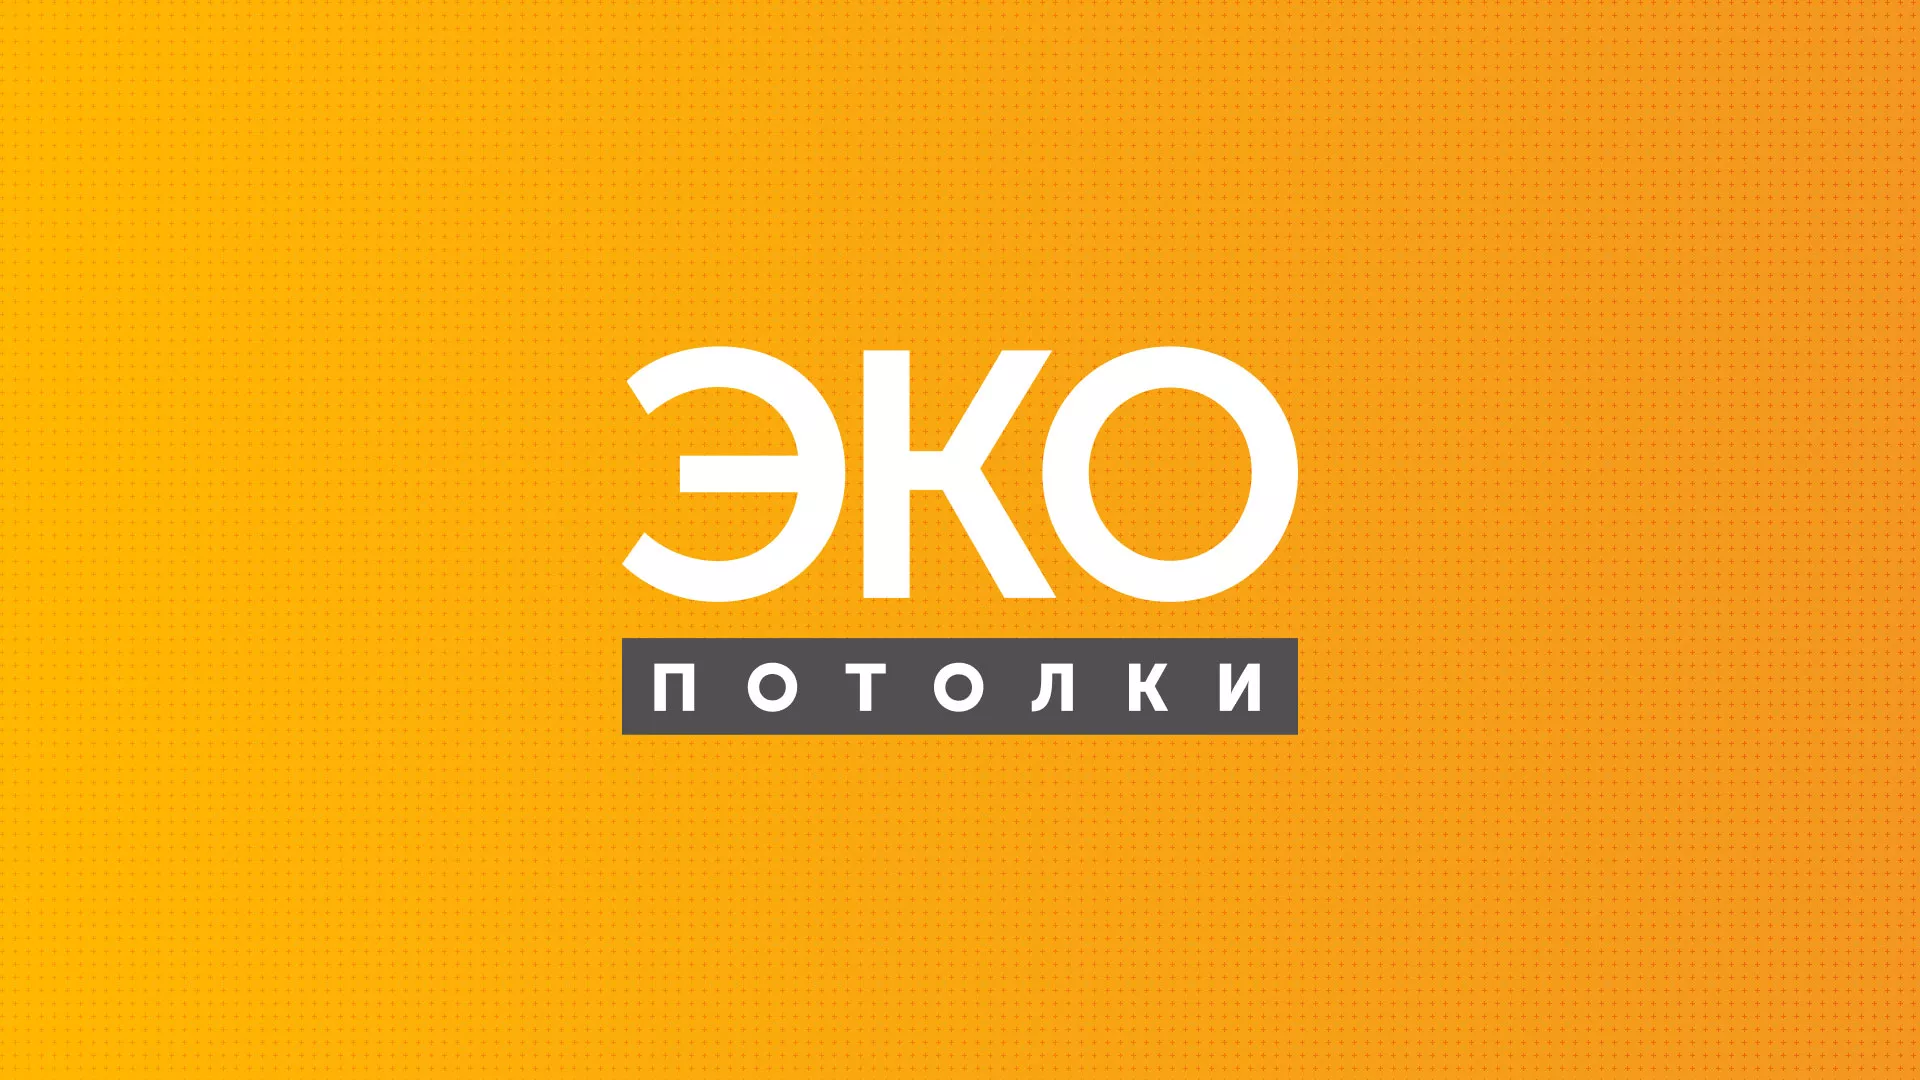 Разработка сайта по натяжным потолкам «Эко Потолки» в Перми